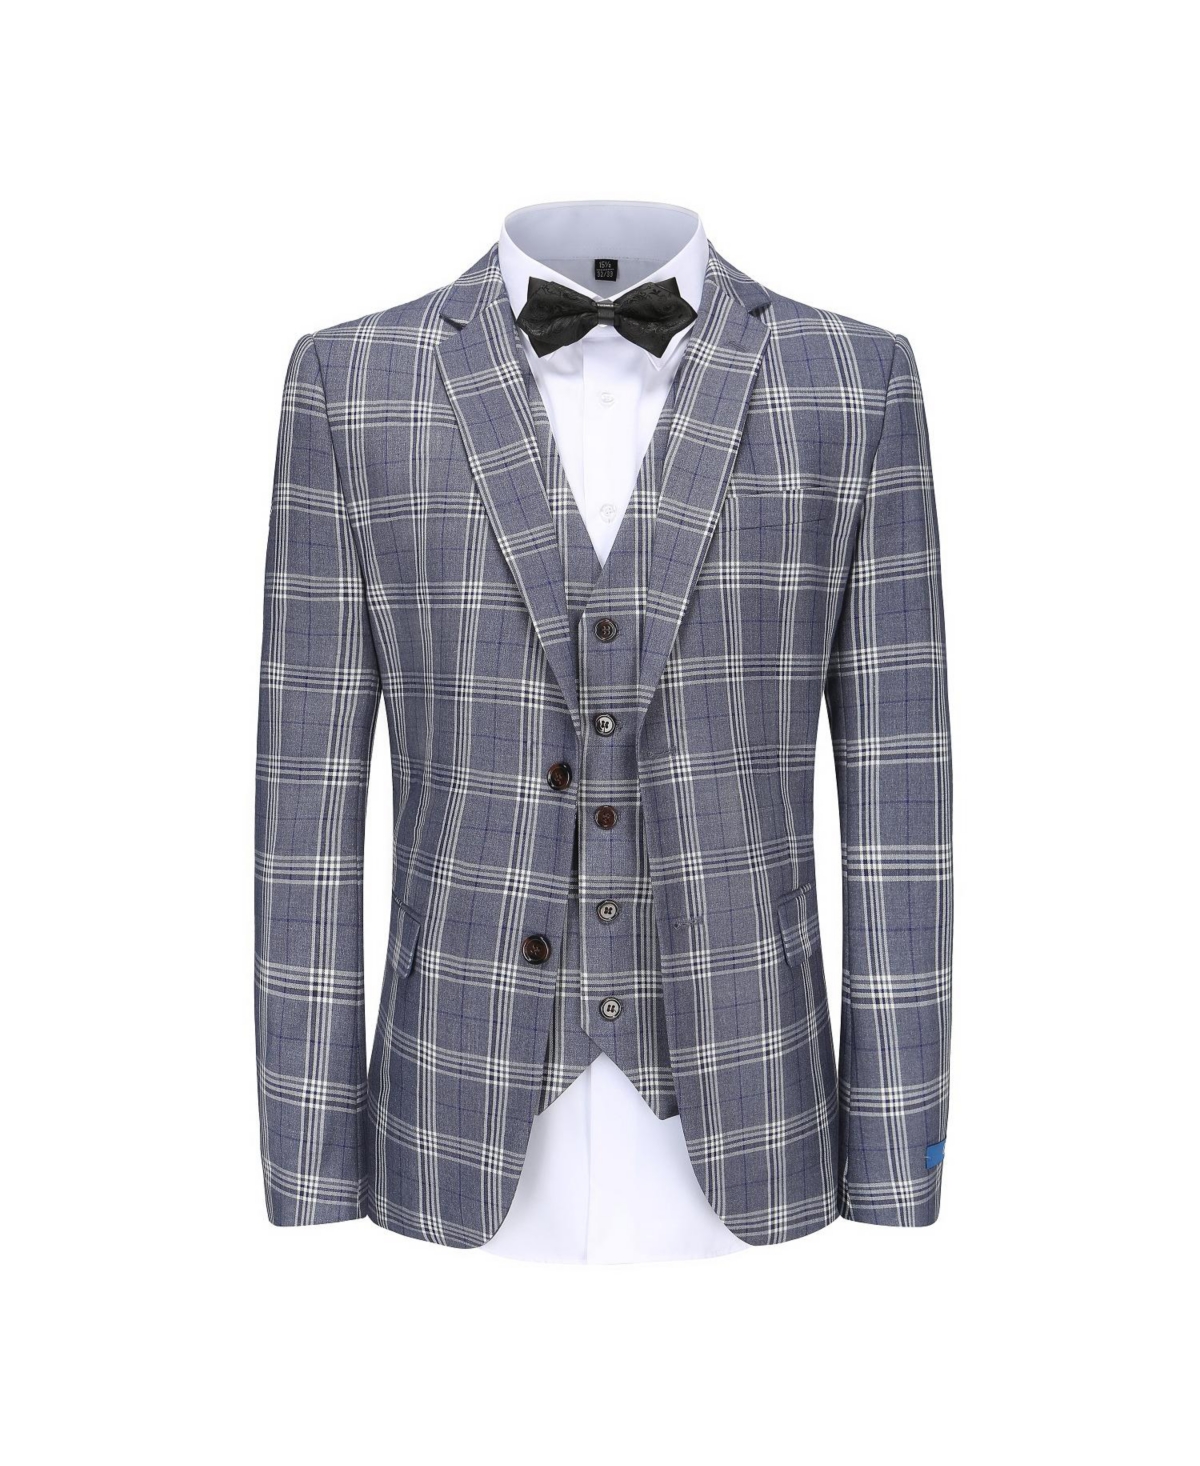 Men's 3-Piece Checkered Plaid Slim Fit Suit - Grey